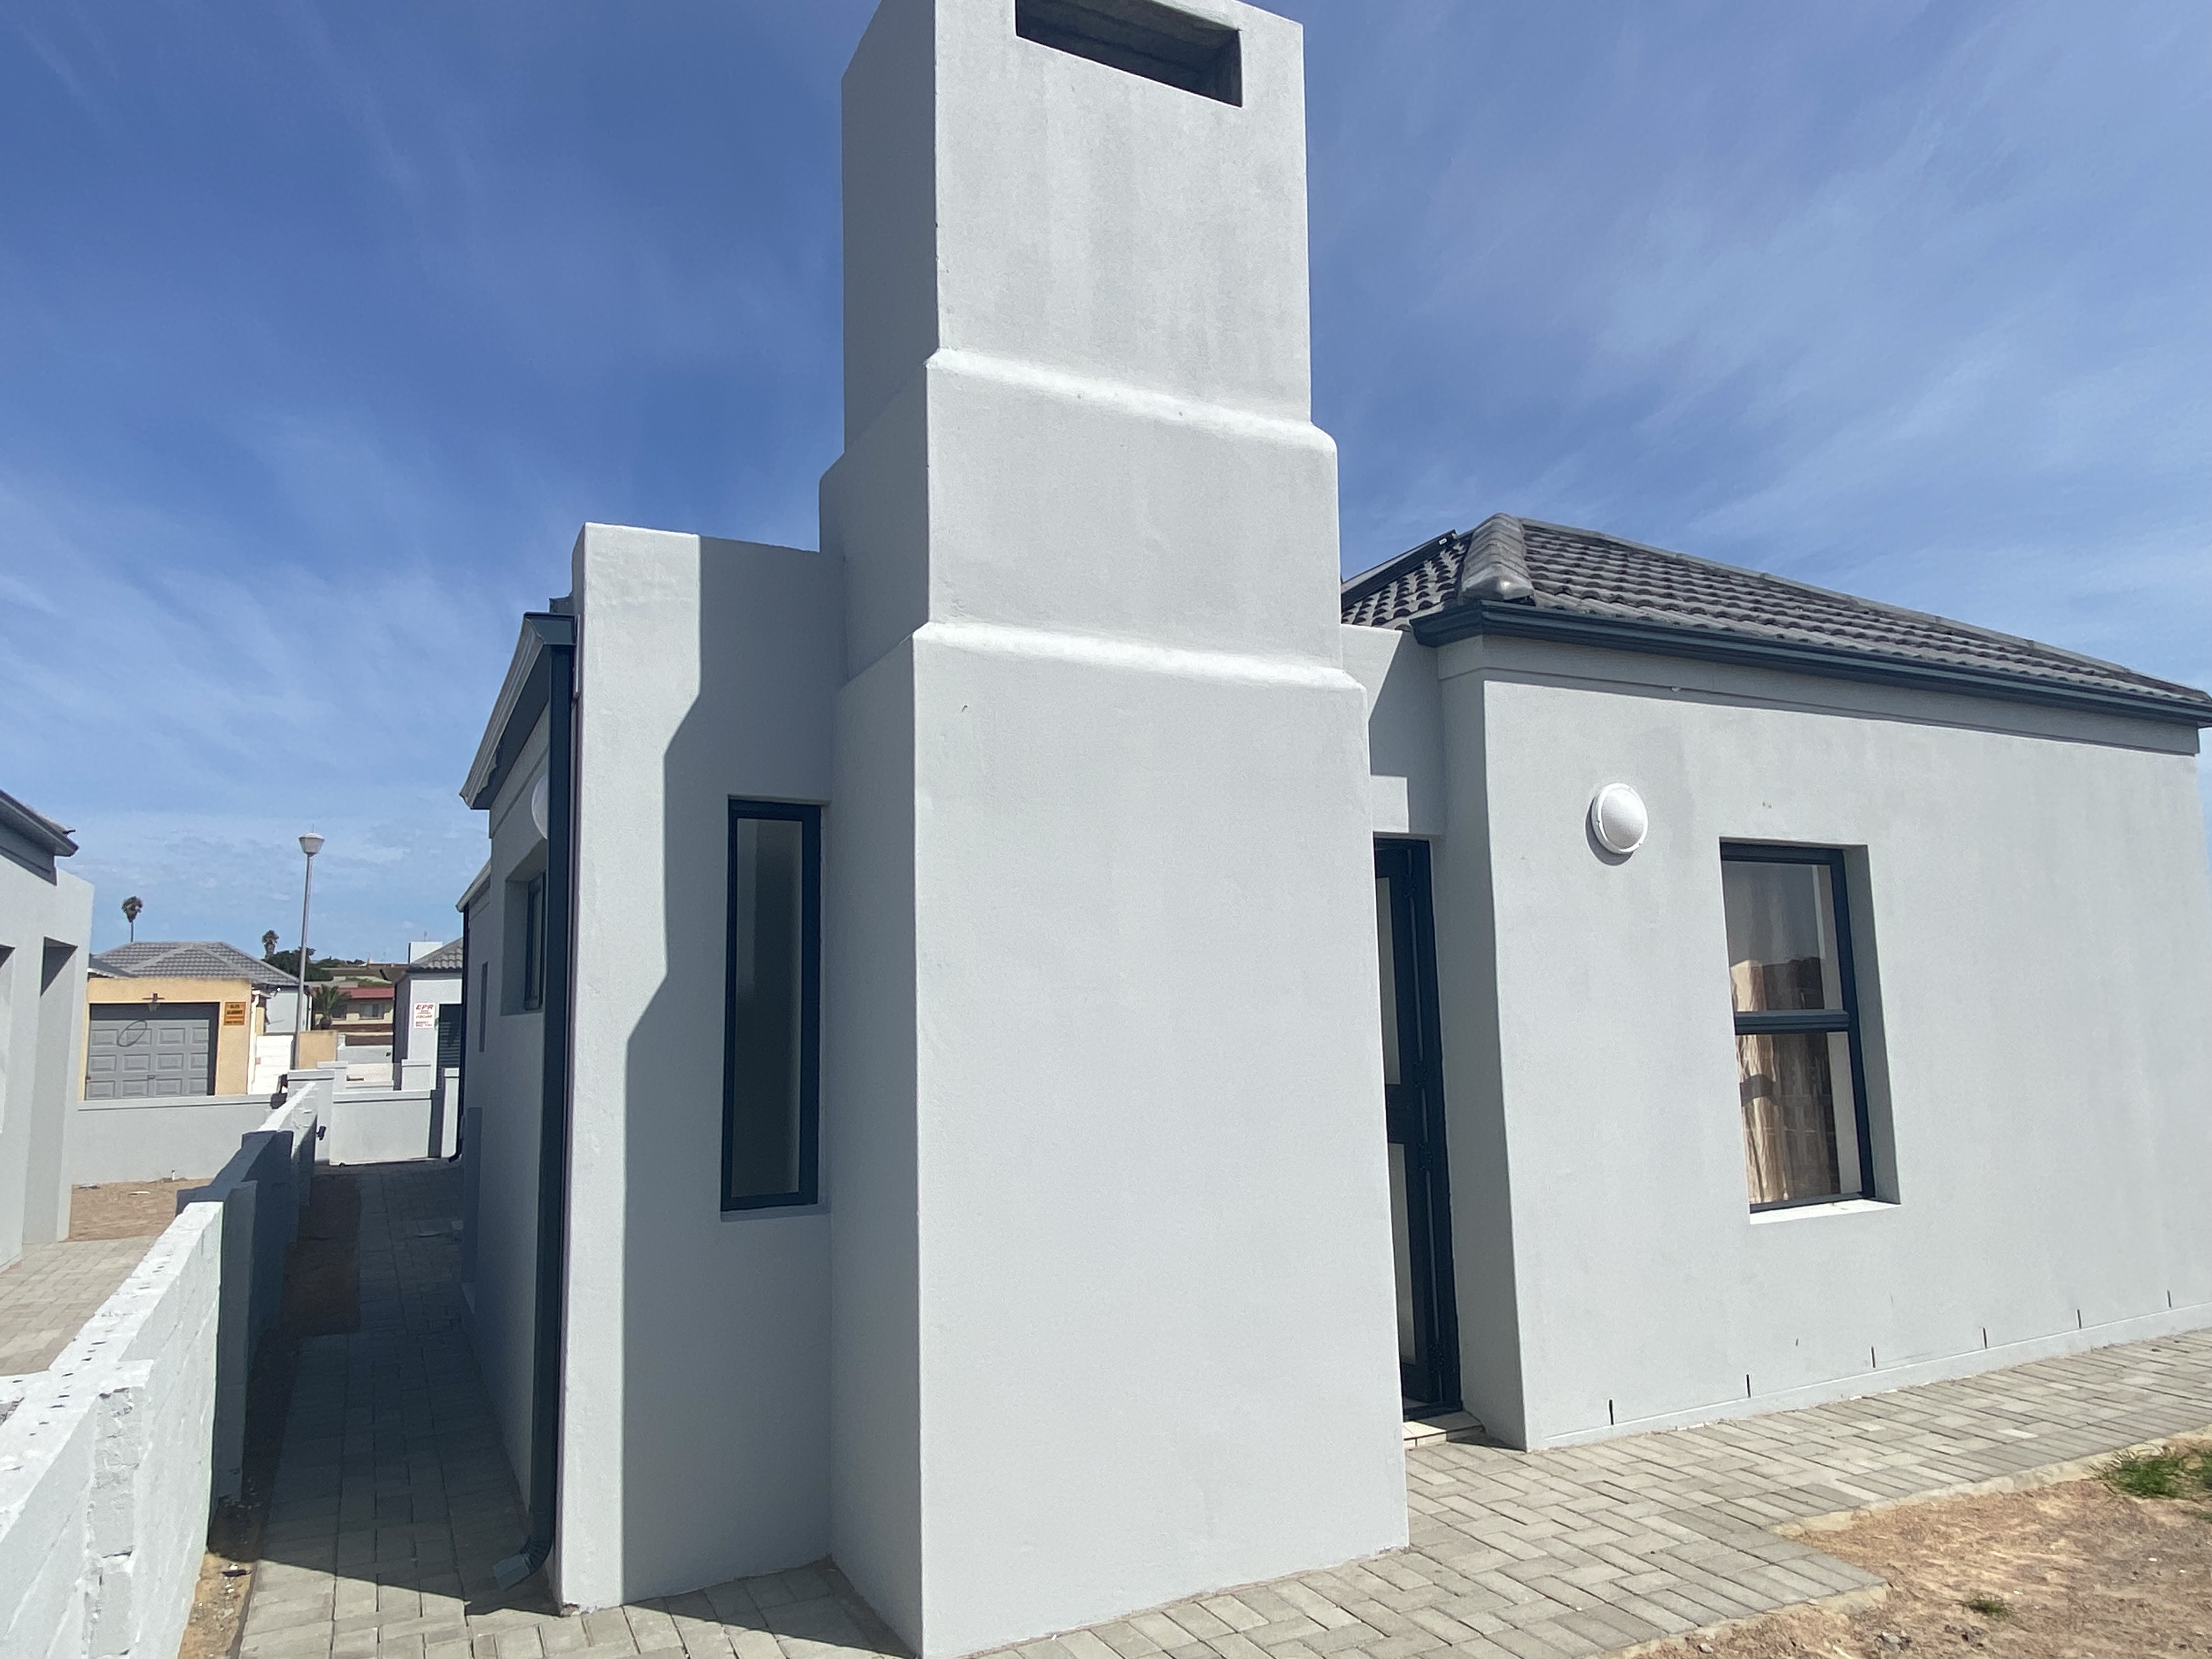 To Let 2 Bedroom Property for Rent in Vredenburg Western Cape